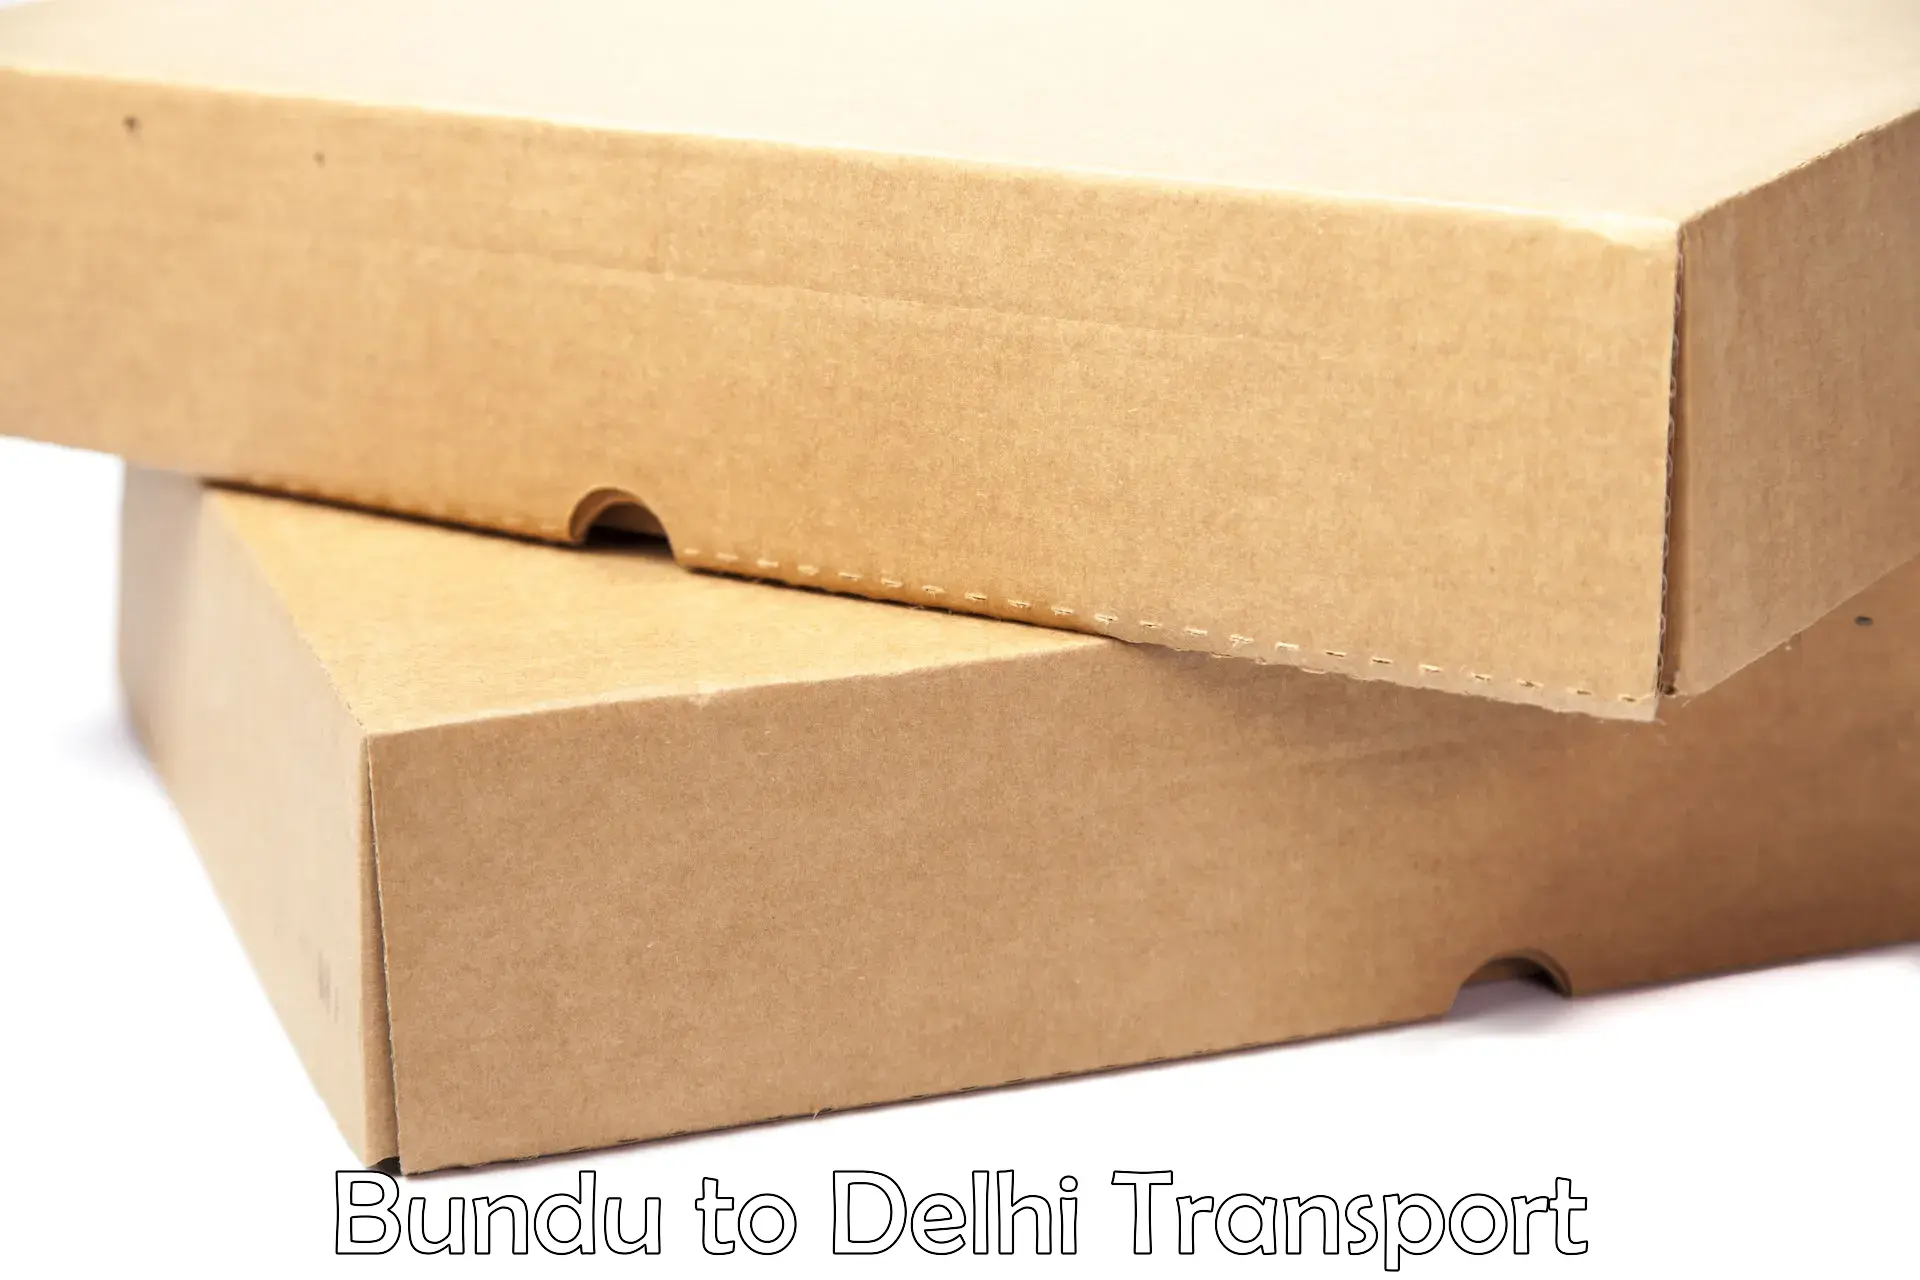 Online transport service Bundu to Delhi